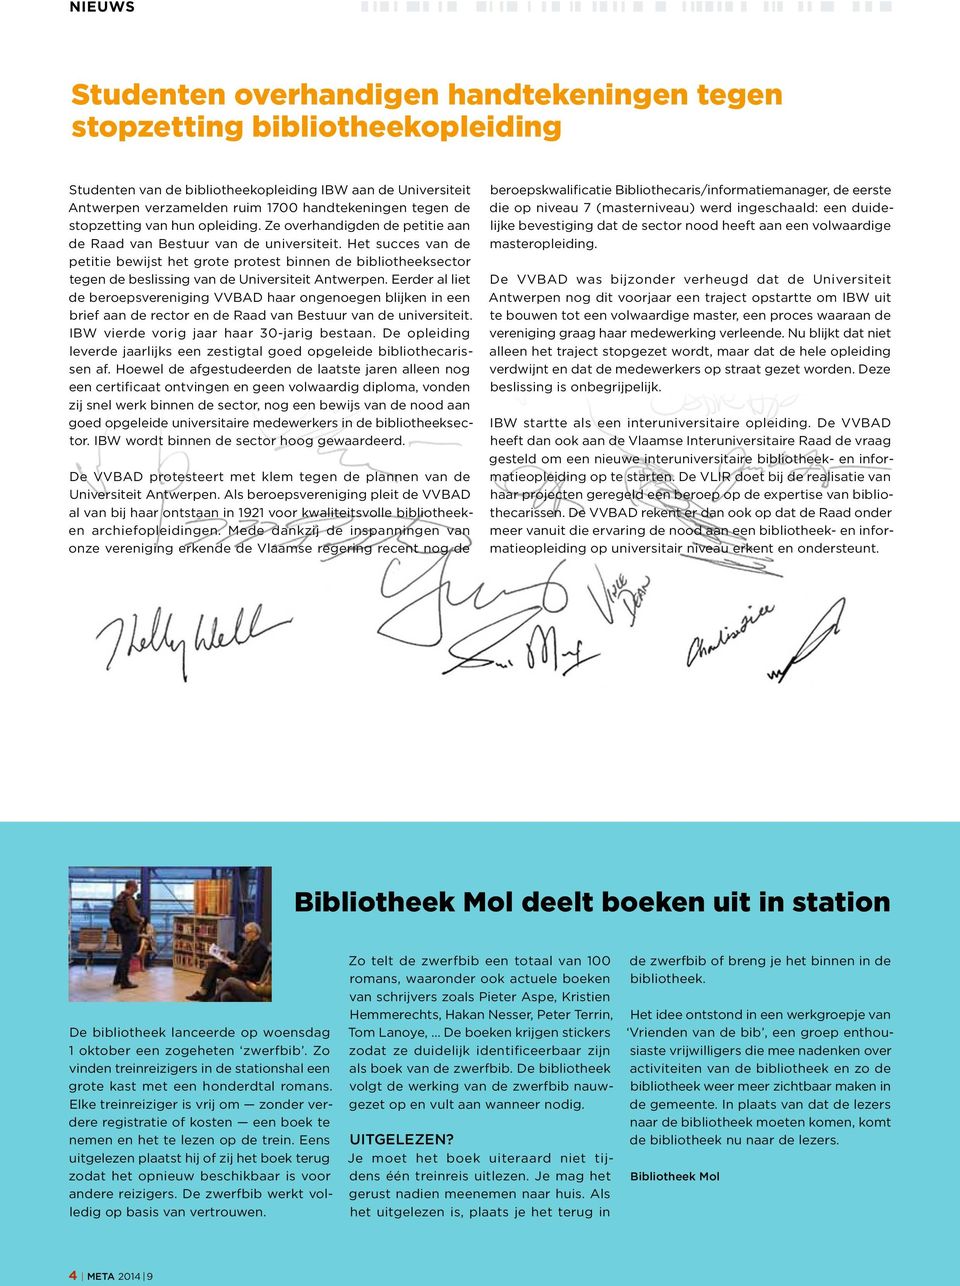 Het succes van de petitie bewijst het grote protest binnen de bibliotheeksector tegen de beslissing van de Universiteit Antwerpen.